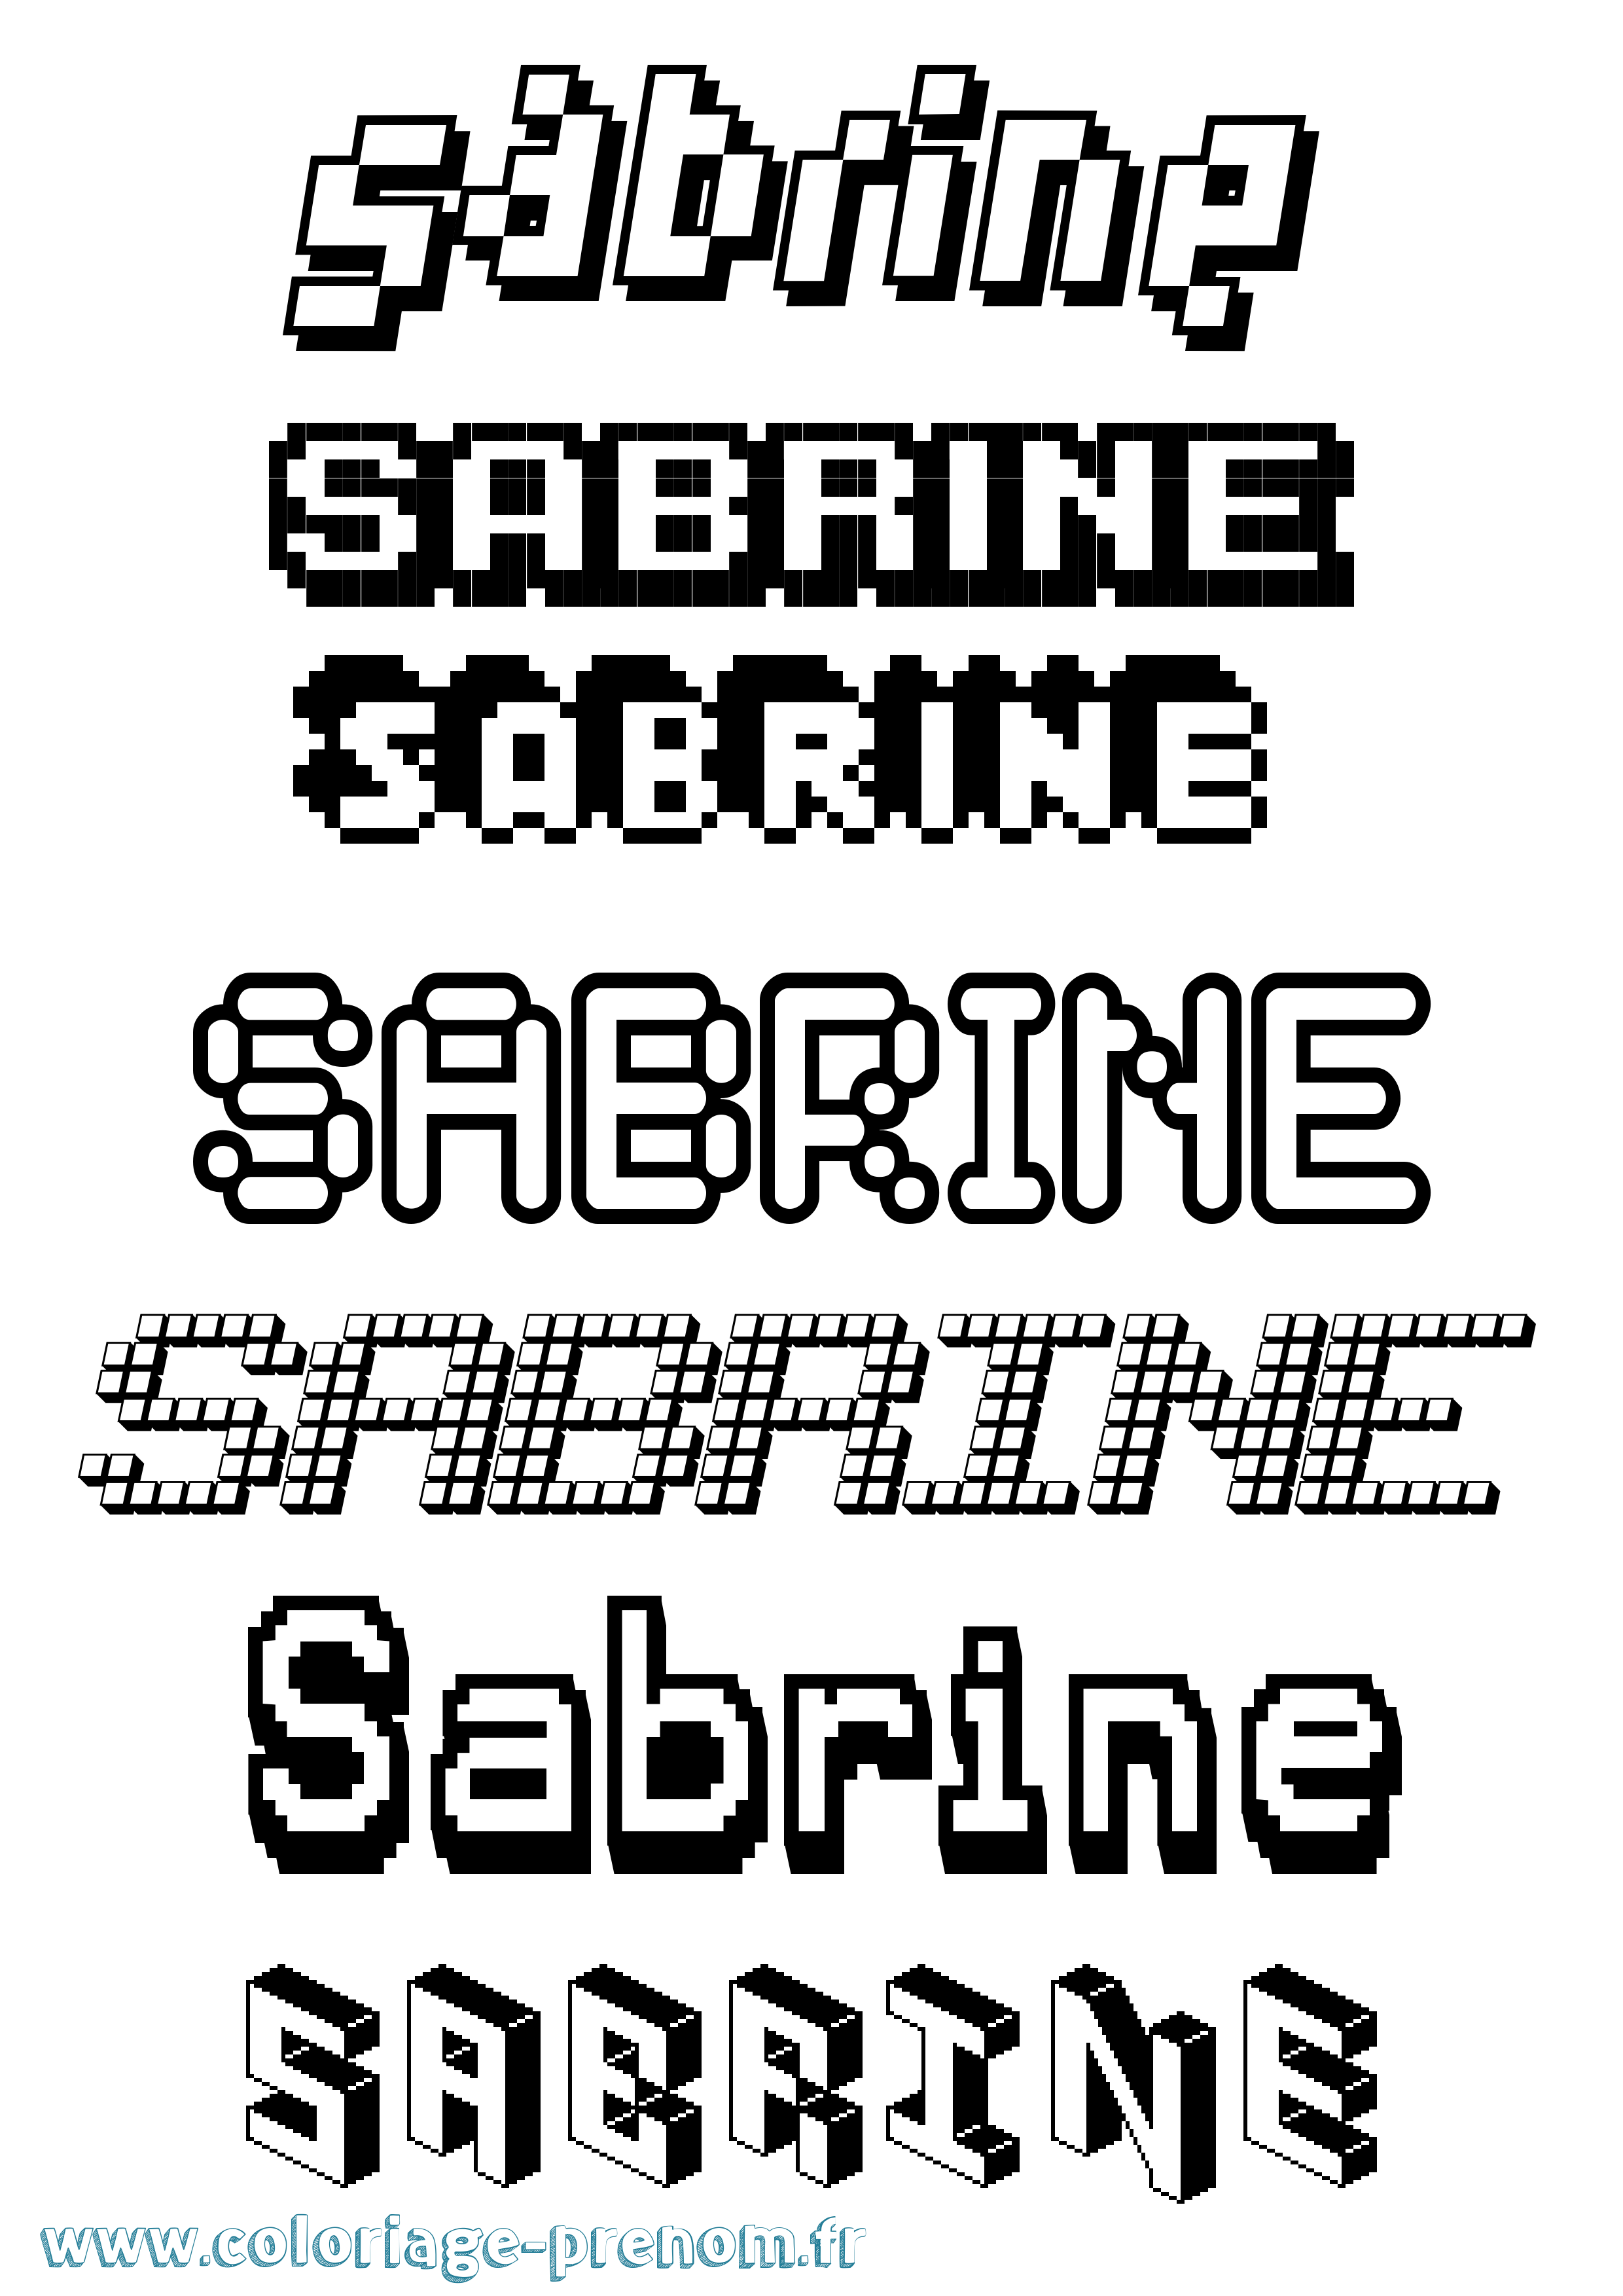 Coloriage prénom Sabrine Pixel